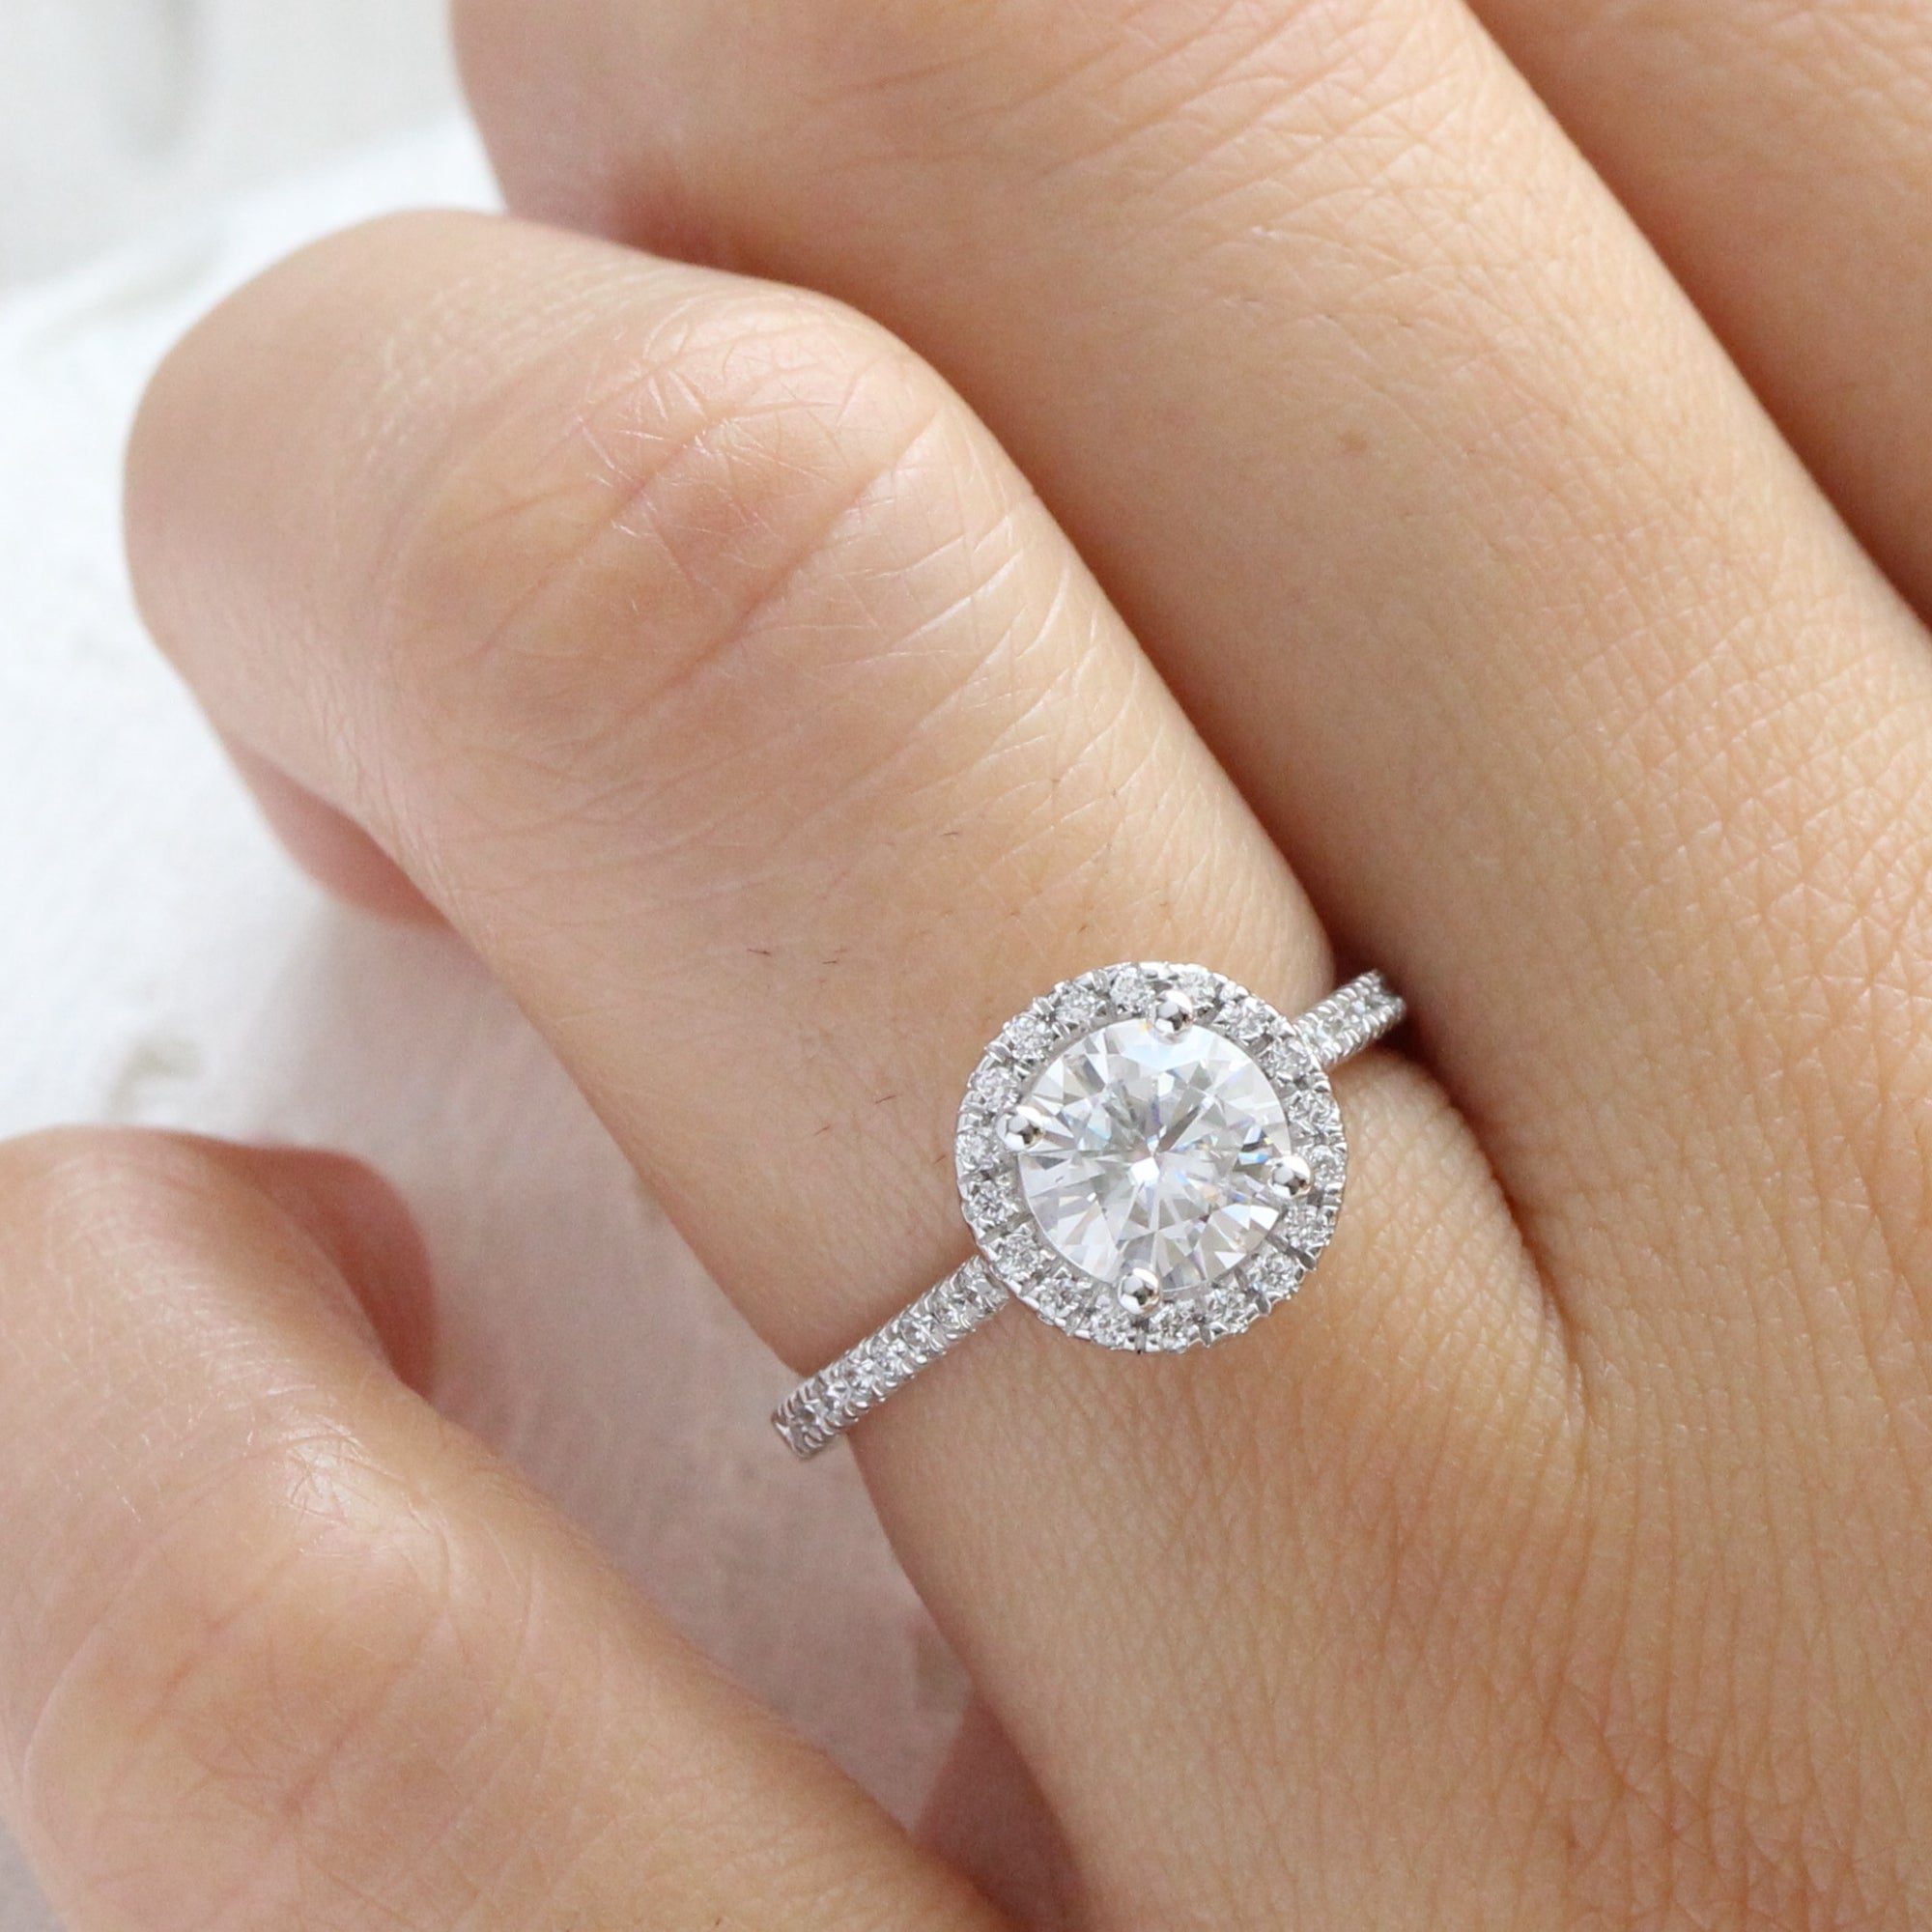 Moissanite Engagement Rings - Sparkling Elegance For Forever Love